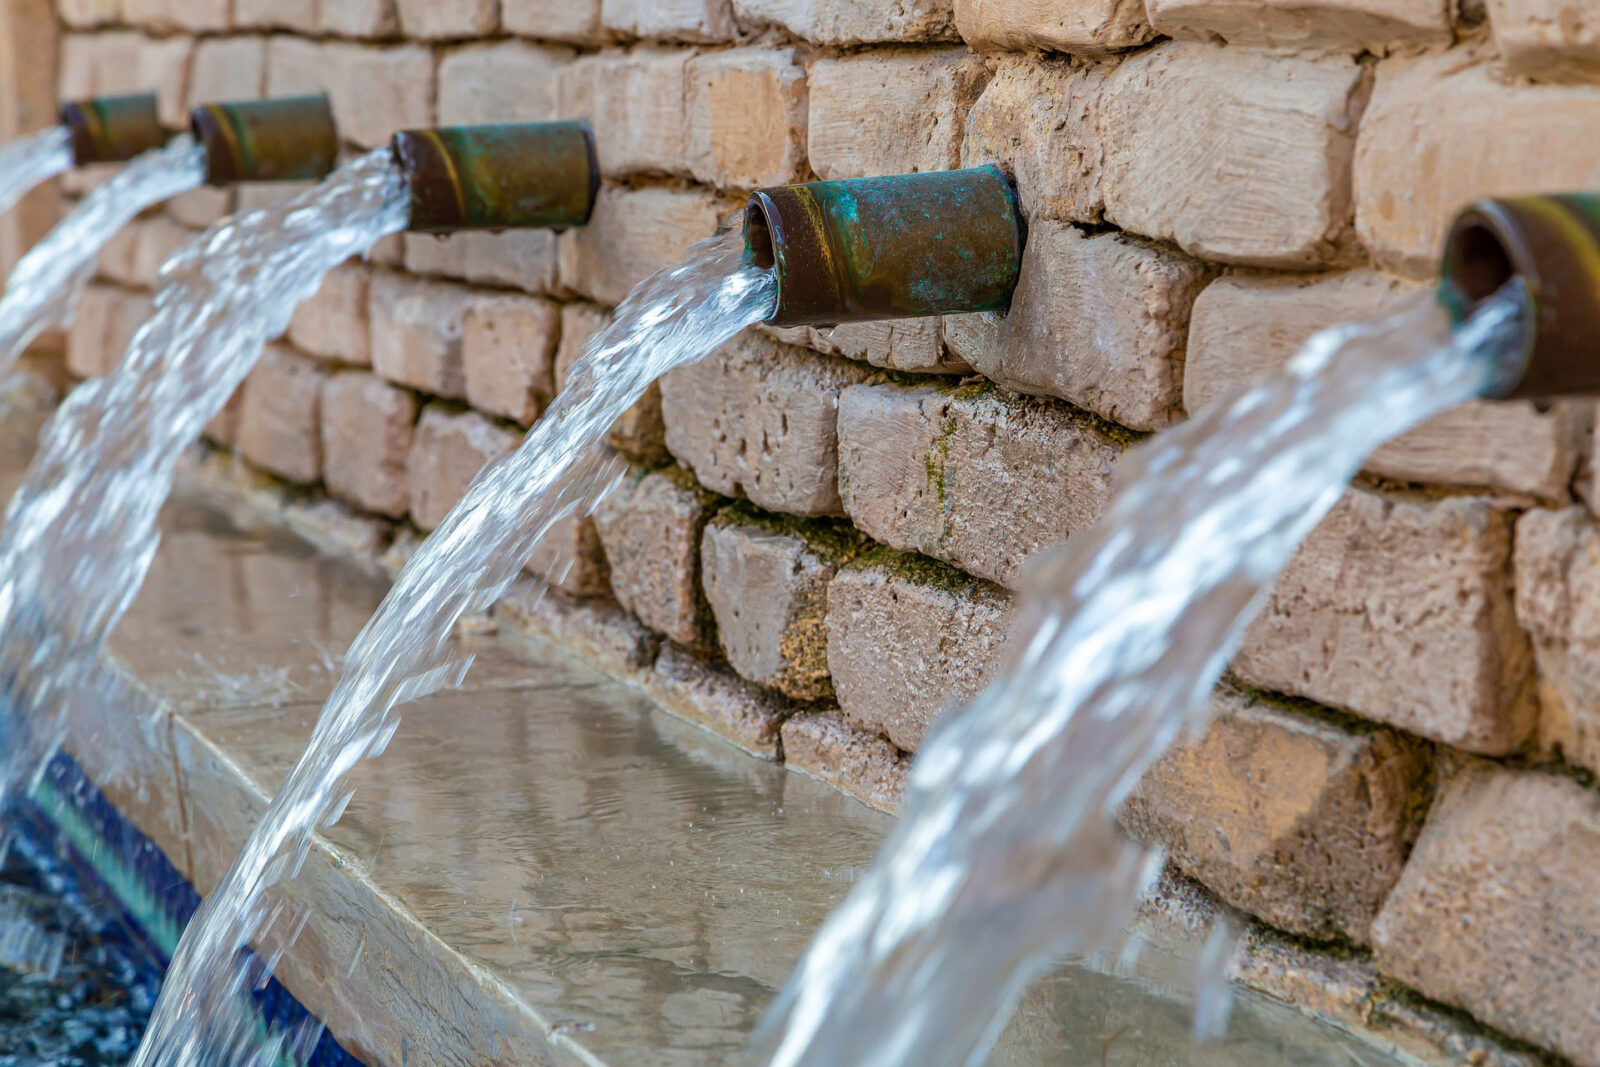 Dia Mundial da Água - Torneira; Água Potável; Fonte de Água; Copo de Água; Água LImpa. Foto: Tom/Pixabay